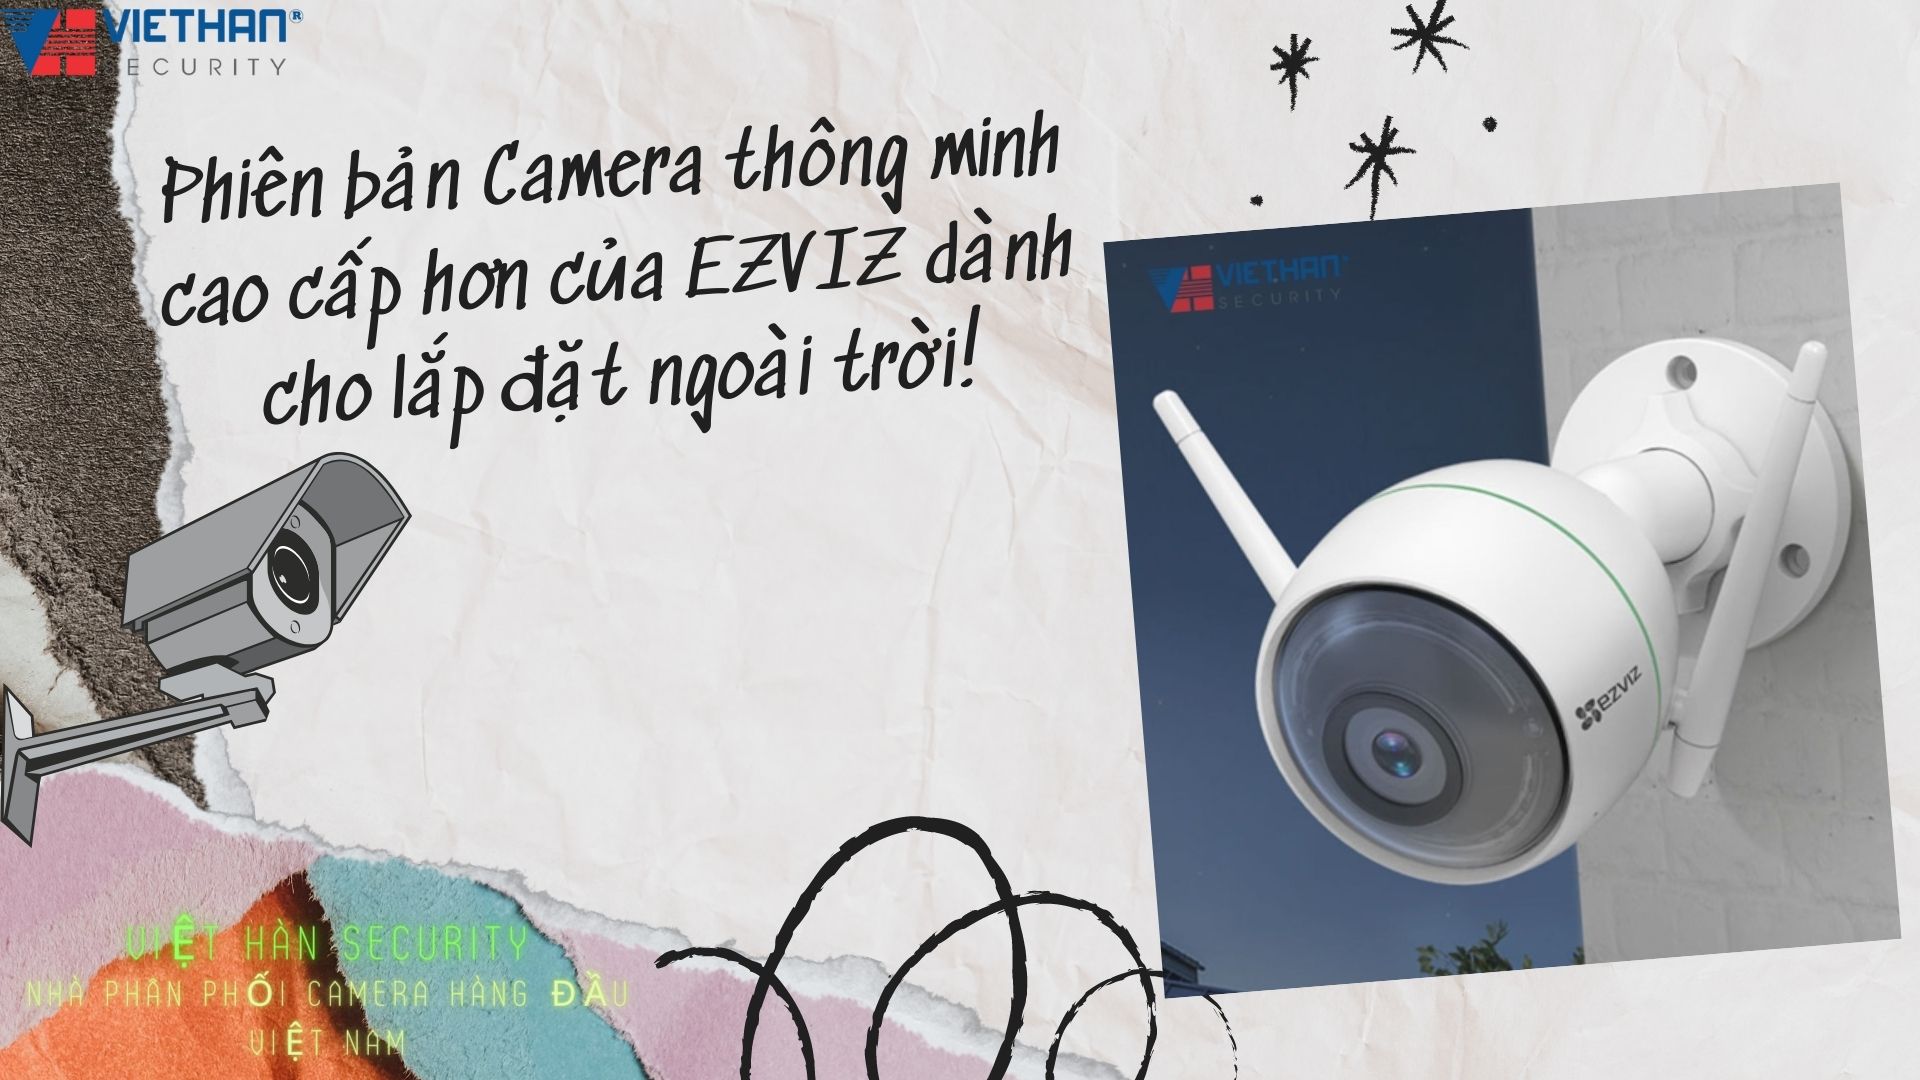 Phiên bản Camera thông minh cao cấp hơn của EZVIZ dành cho lắp đặt ngoài trời